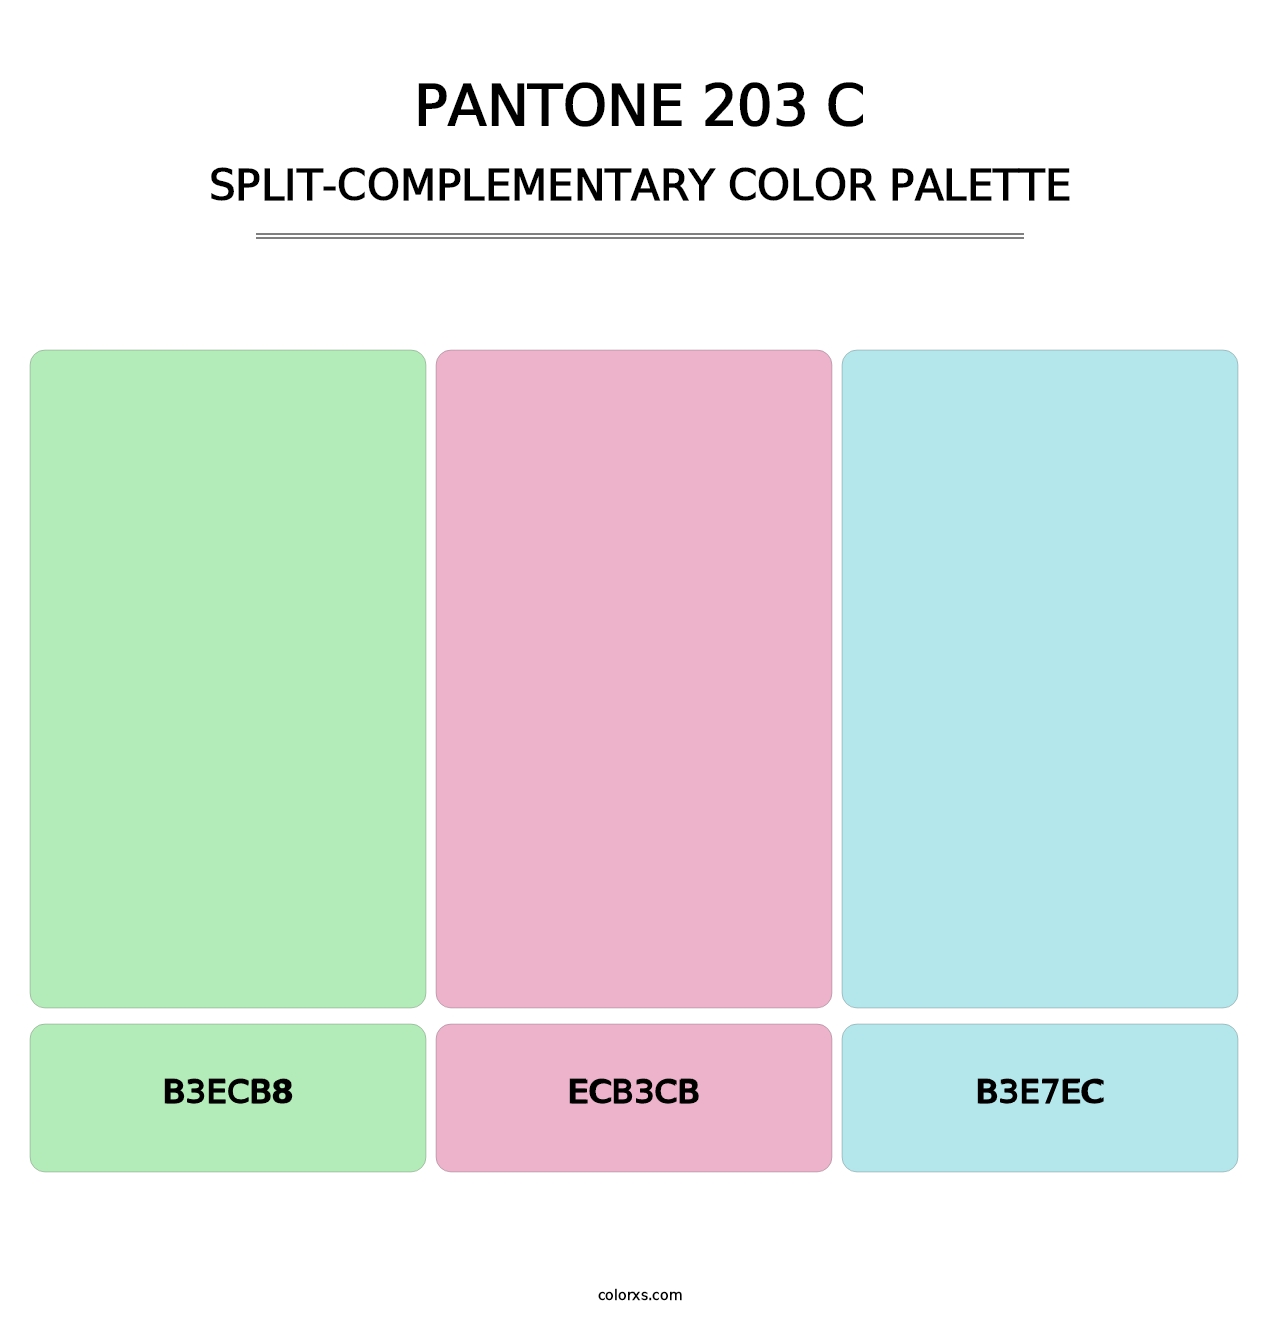 PANTONE 203 C - Split-Complementary Color Palette